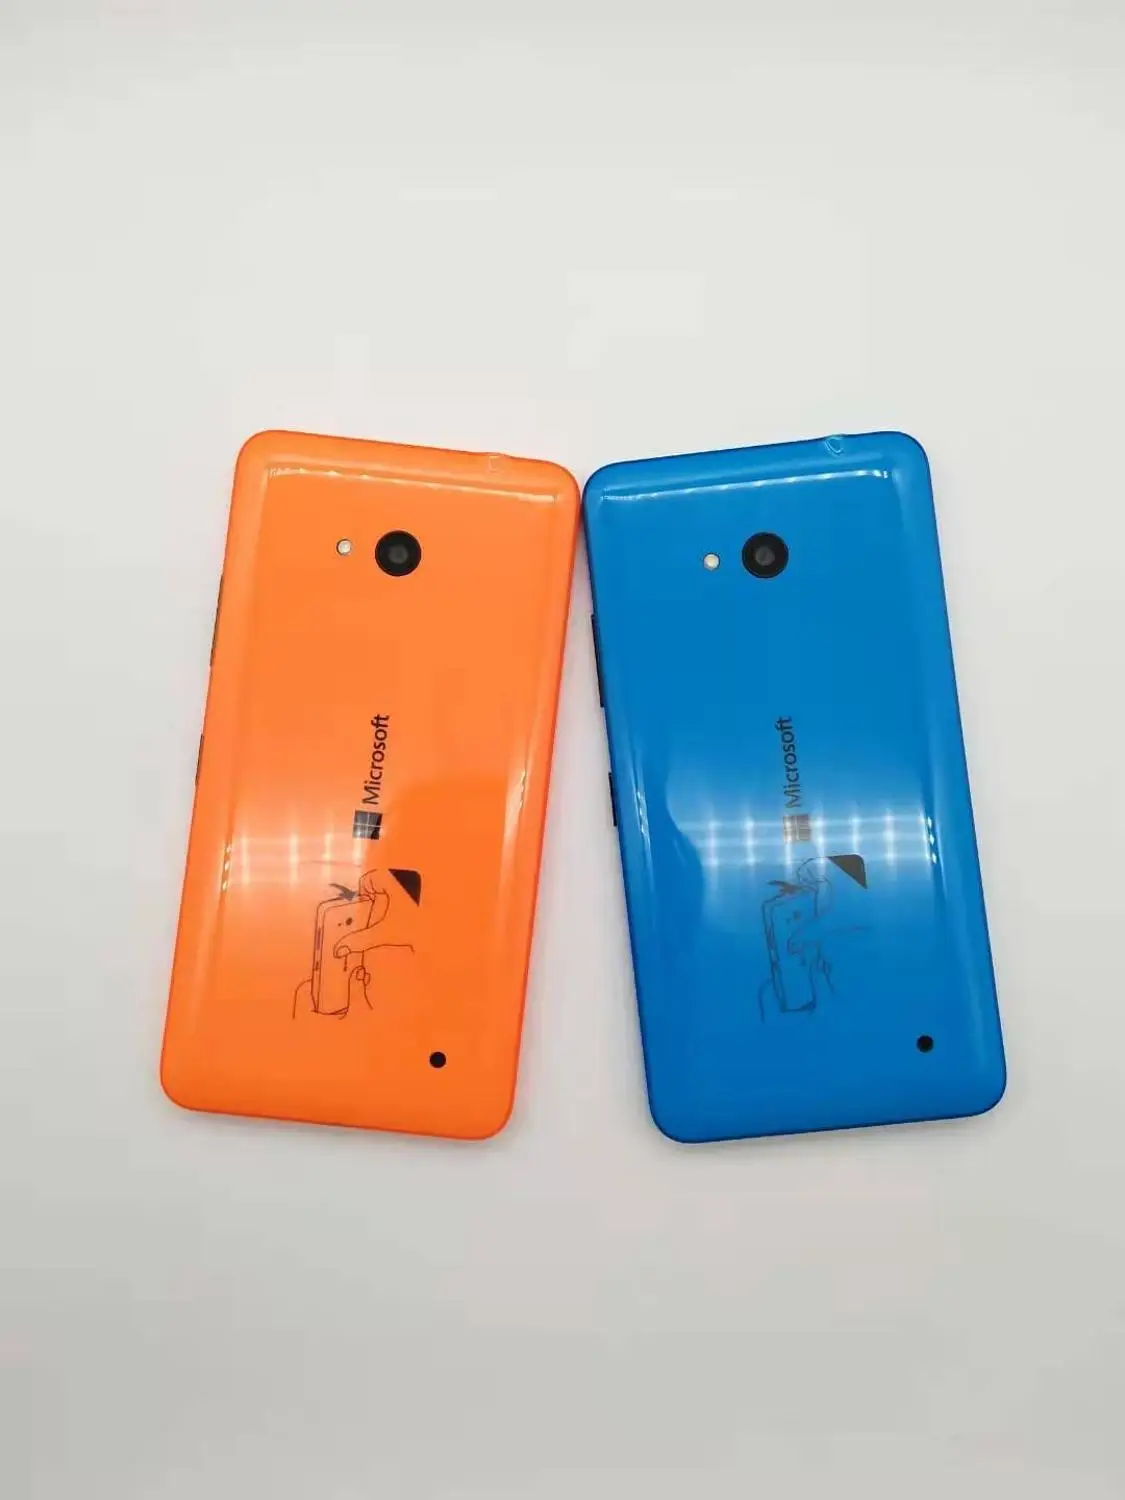 Мобильный телефон Nokia Lumia 640, Восстановленный, оригинальная камера 8 МП, NFC, четырехъядерный, 8 Гб ROM, 1 ГБ RAM, 4G LTE, FDD, 4G, 5,0 дюйма, 1280x720, 4G от AliExpress RU&CIS NEW